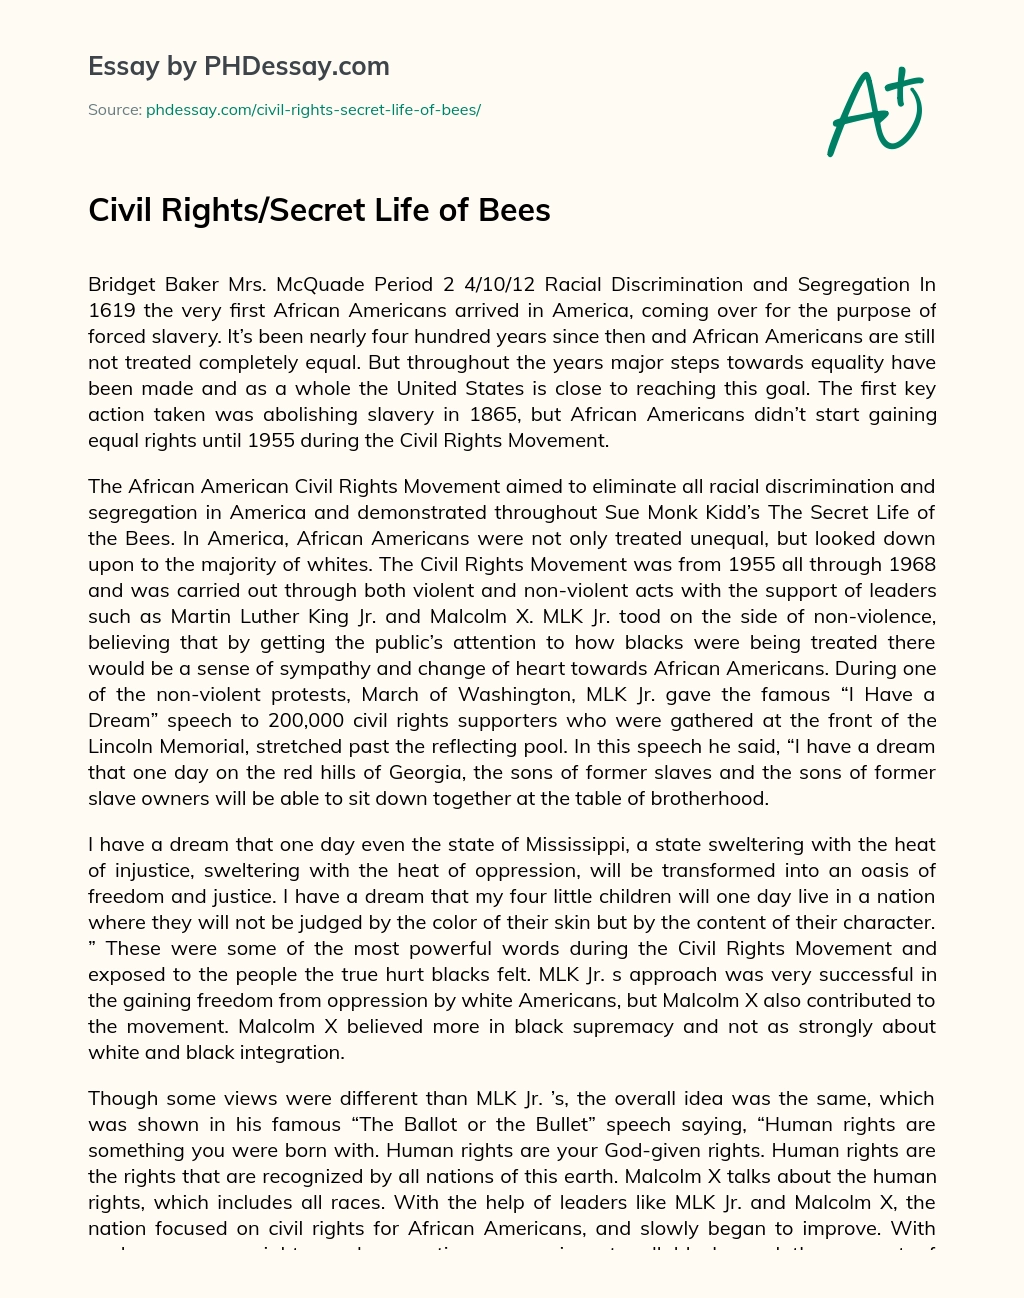 Civil Rights/Secret Life of Bees essay